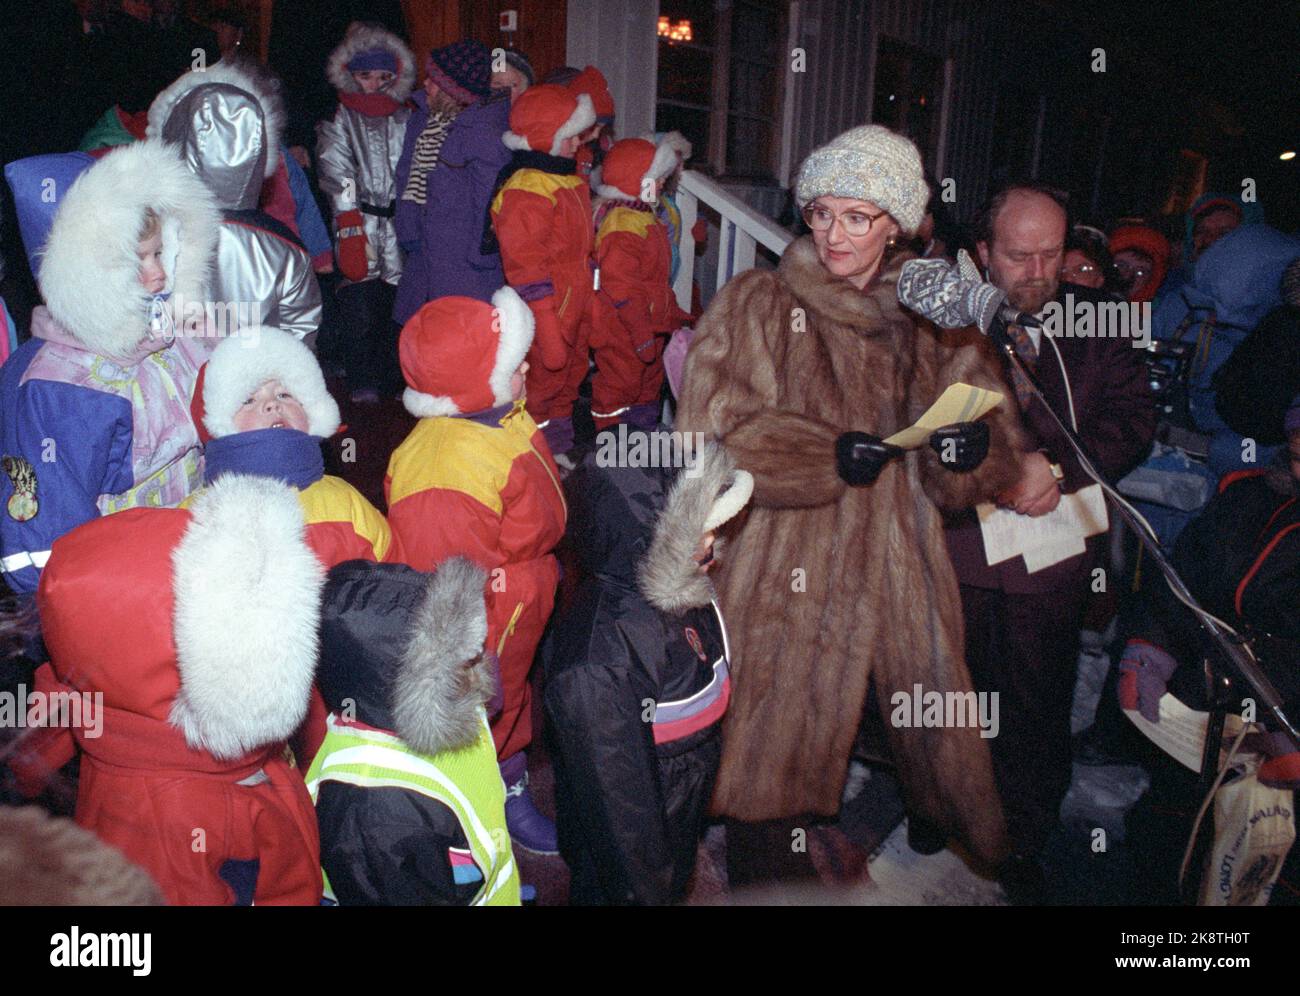 Svalbard 19911201: Das königliche Paar besucht Svalbard. Das Bild: König Harald und Königin Sonja zusammen beim Weihnachtsgottesdienst in der Kirche. Danach war das königliche Paar anwesend, als es den Weihnachtsbaum entzündet hat. Hier trifft die Königin auf Kinder aus Spitzbergen (alles in extrem guter, warmer Winterkleidung! Kapuzen mit Fell). Sogar die Königin ist gut in Pelzjacke und gut gestricktem Hut gekleidet. Foto: Jon Eeg Stockfoto